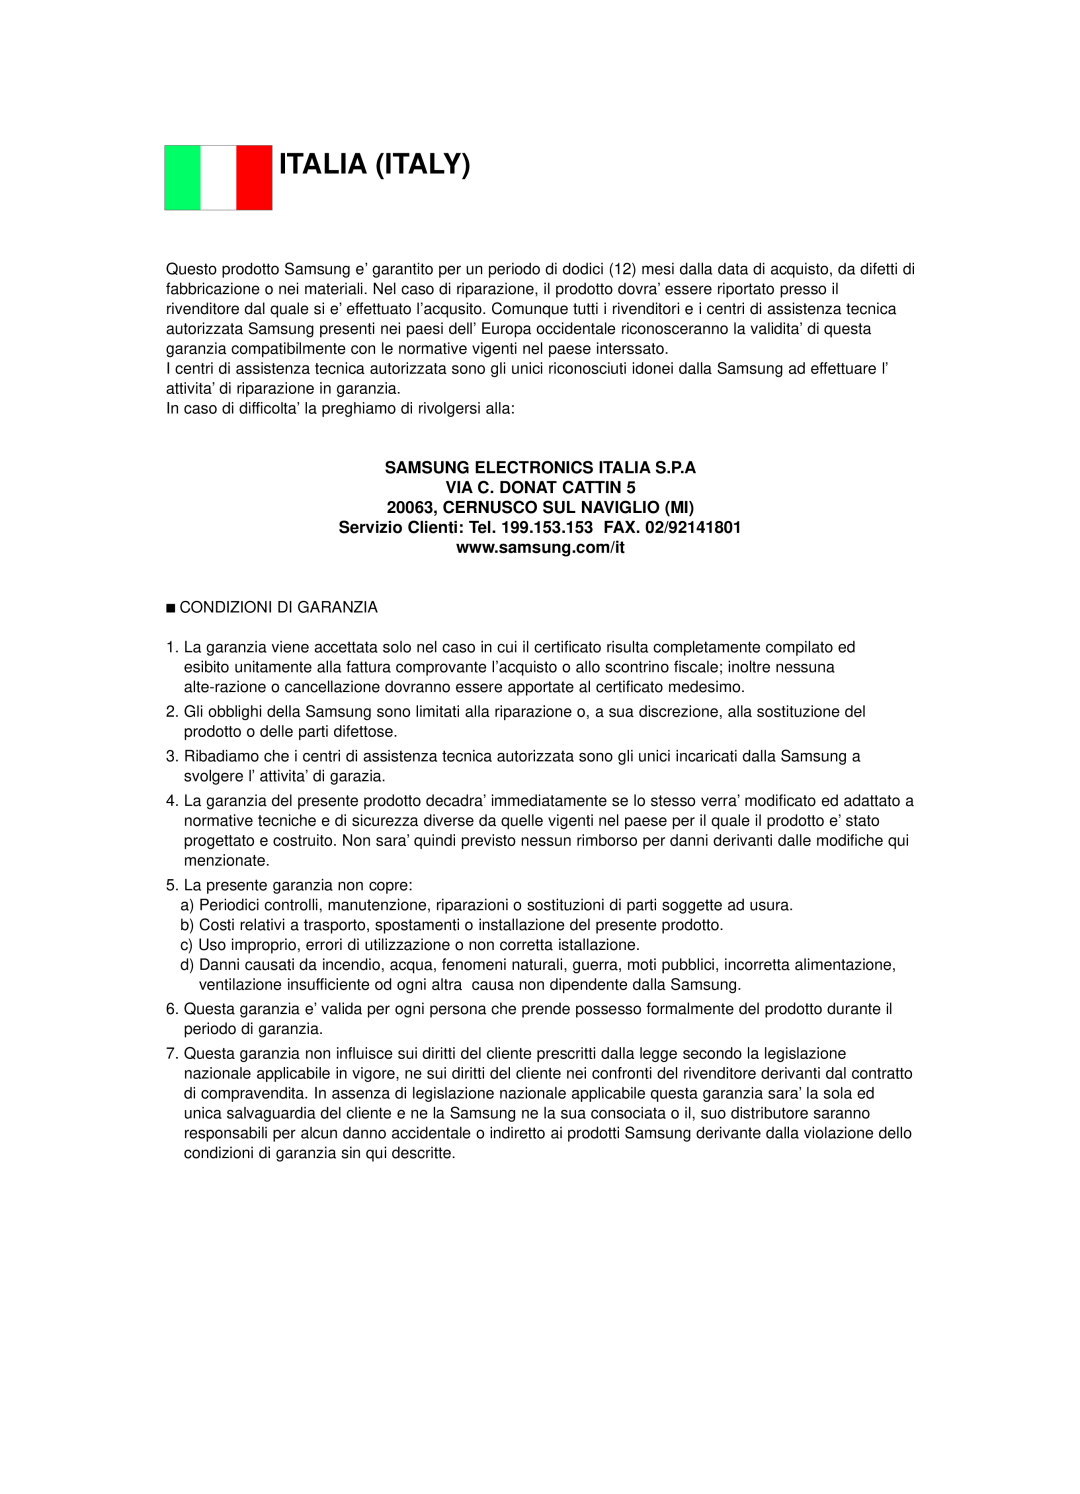 Samsung DVD-R120E/XET Italia Italy, Samsung Electronics Italia S.P.A Via C. Donat Cattin, 20063, CERNUSCO SUL NAVIGLIO MI 